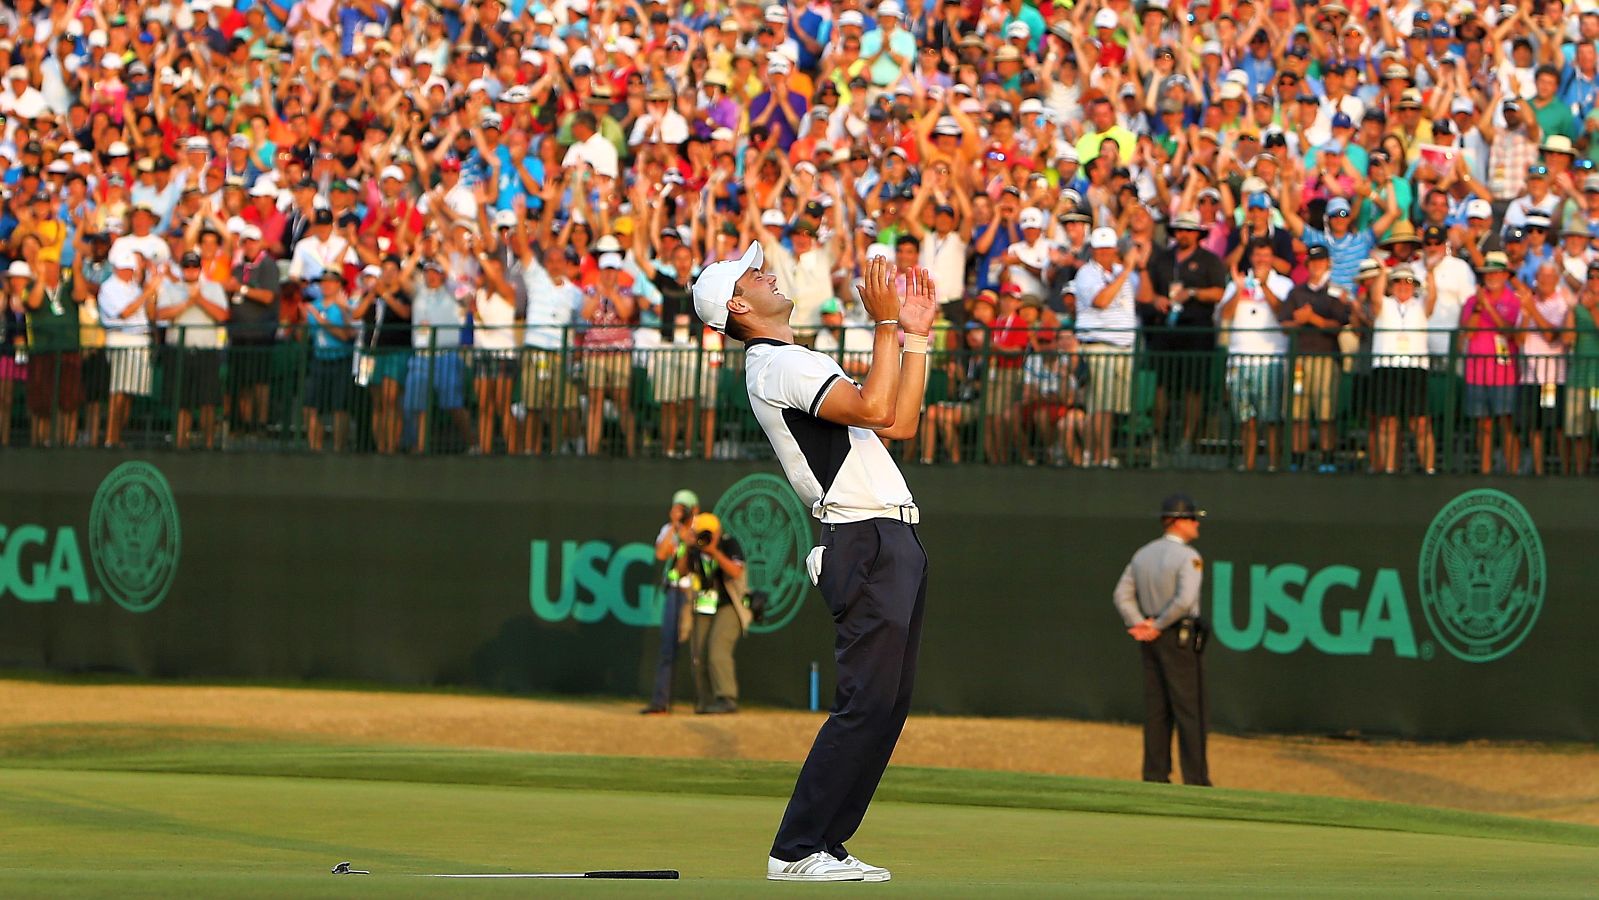 Der Moment des Sieges: Martin Kaymer nach seinem letzten Putt bei der US Open 2014 im Pinehurst Resort.